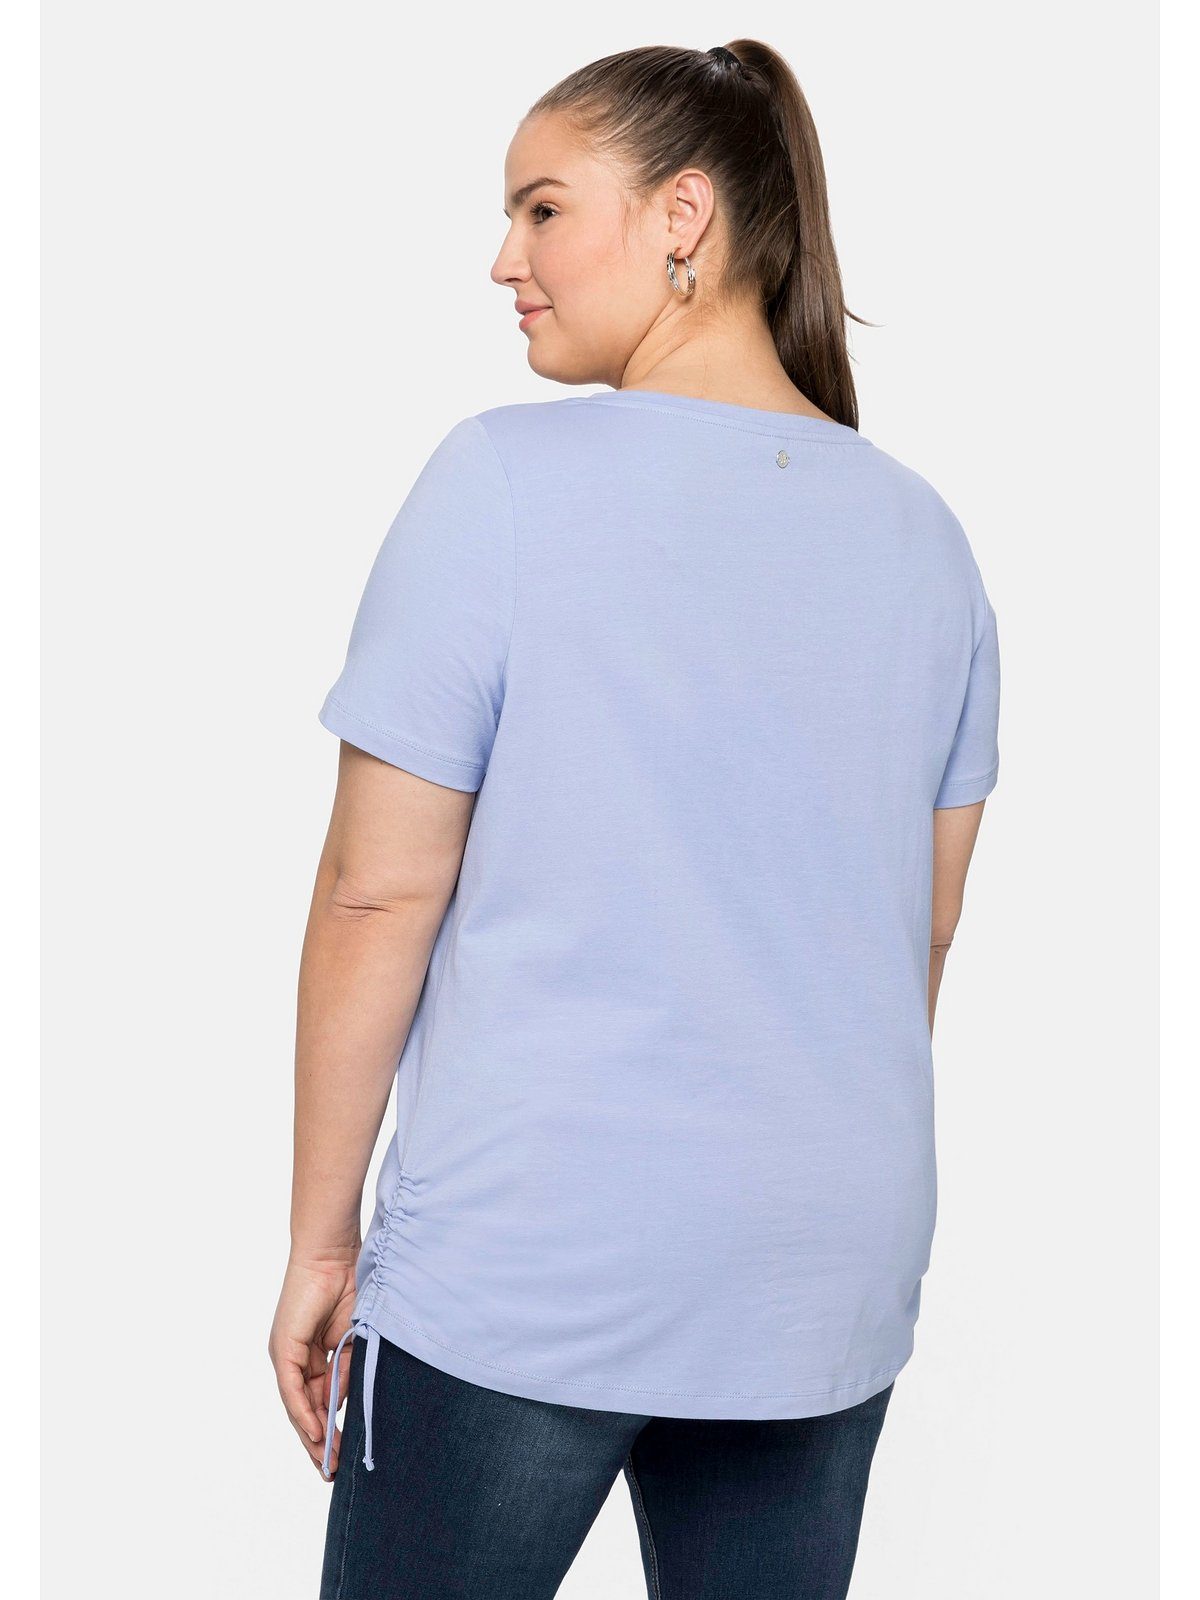 mittelblau Raffung Große Größen Sheego T-Shirt mit und seitlicher Bindeband